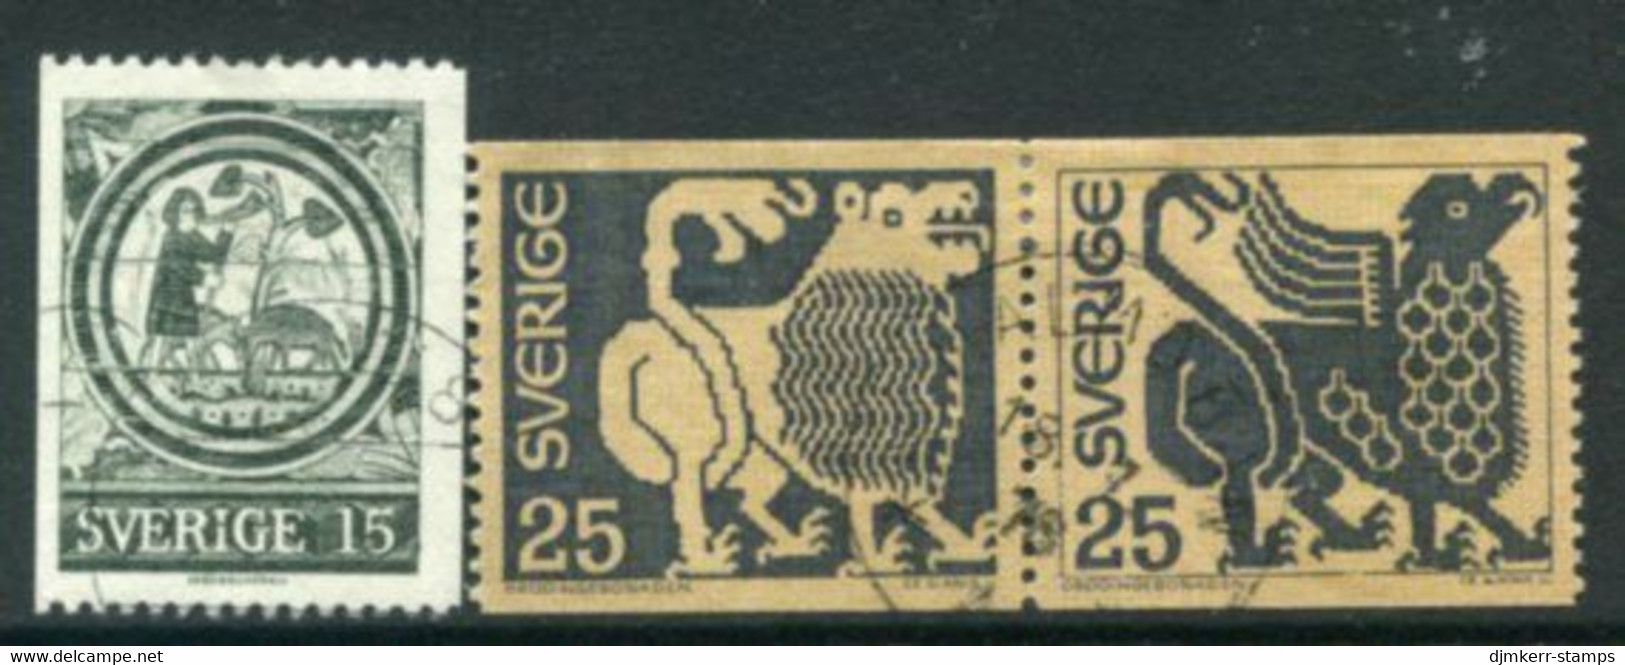 SWEDEN 1971 Definitive: Art Used.  Michel 706-08 - Gebruikt